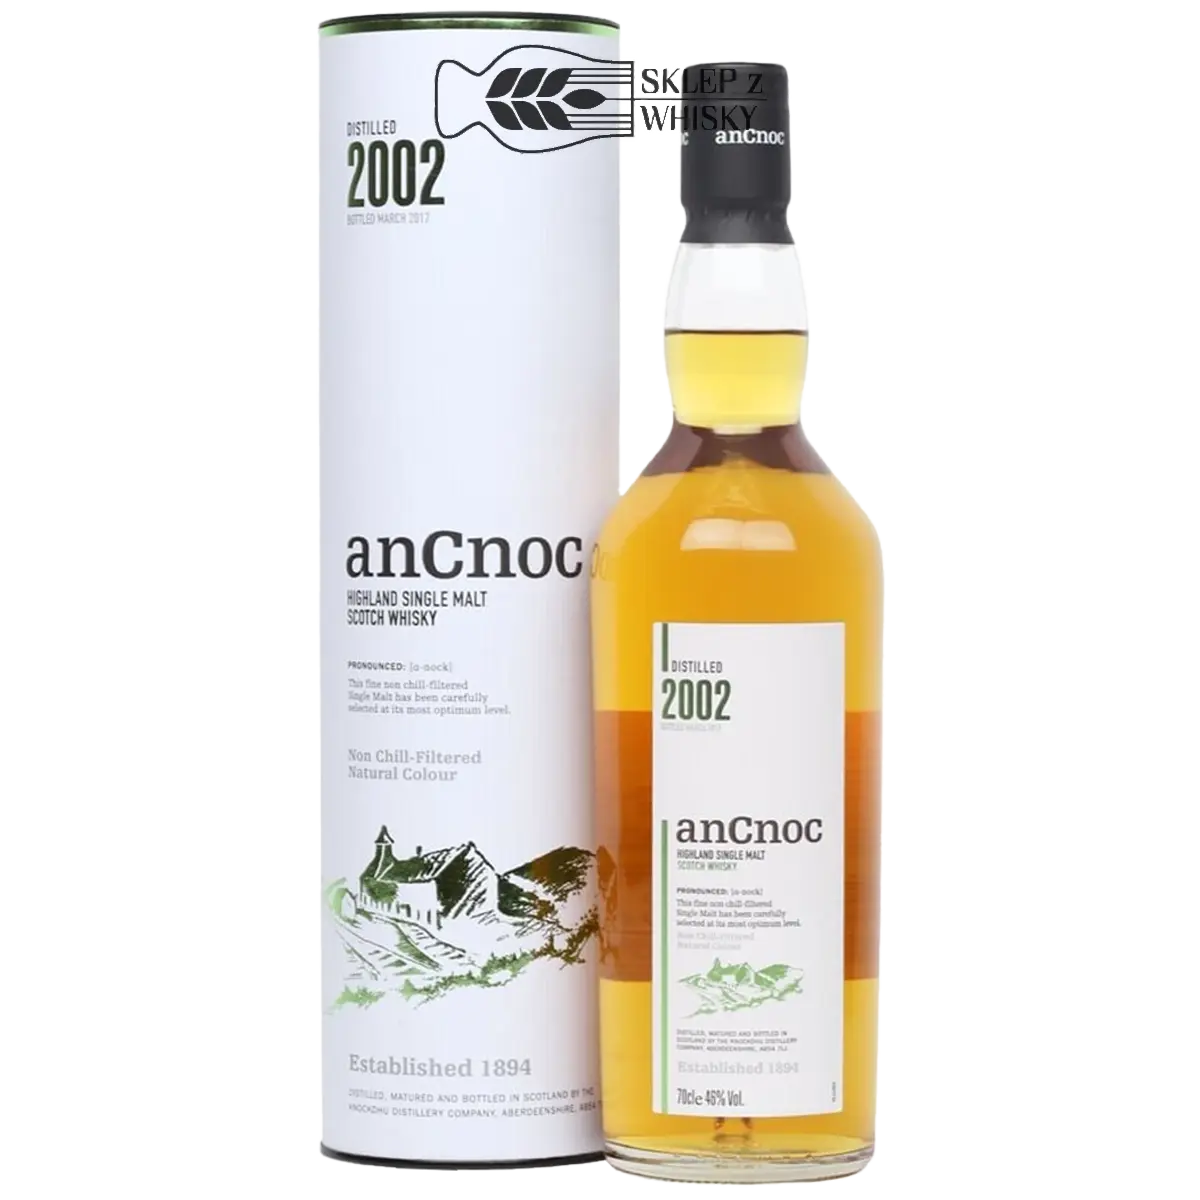 AnCnoc 2002 - szkocka whisky single malt z regionu Highlands, 700 ml, w pudełku